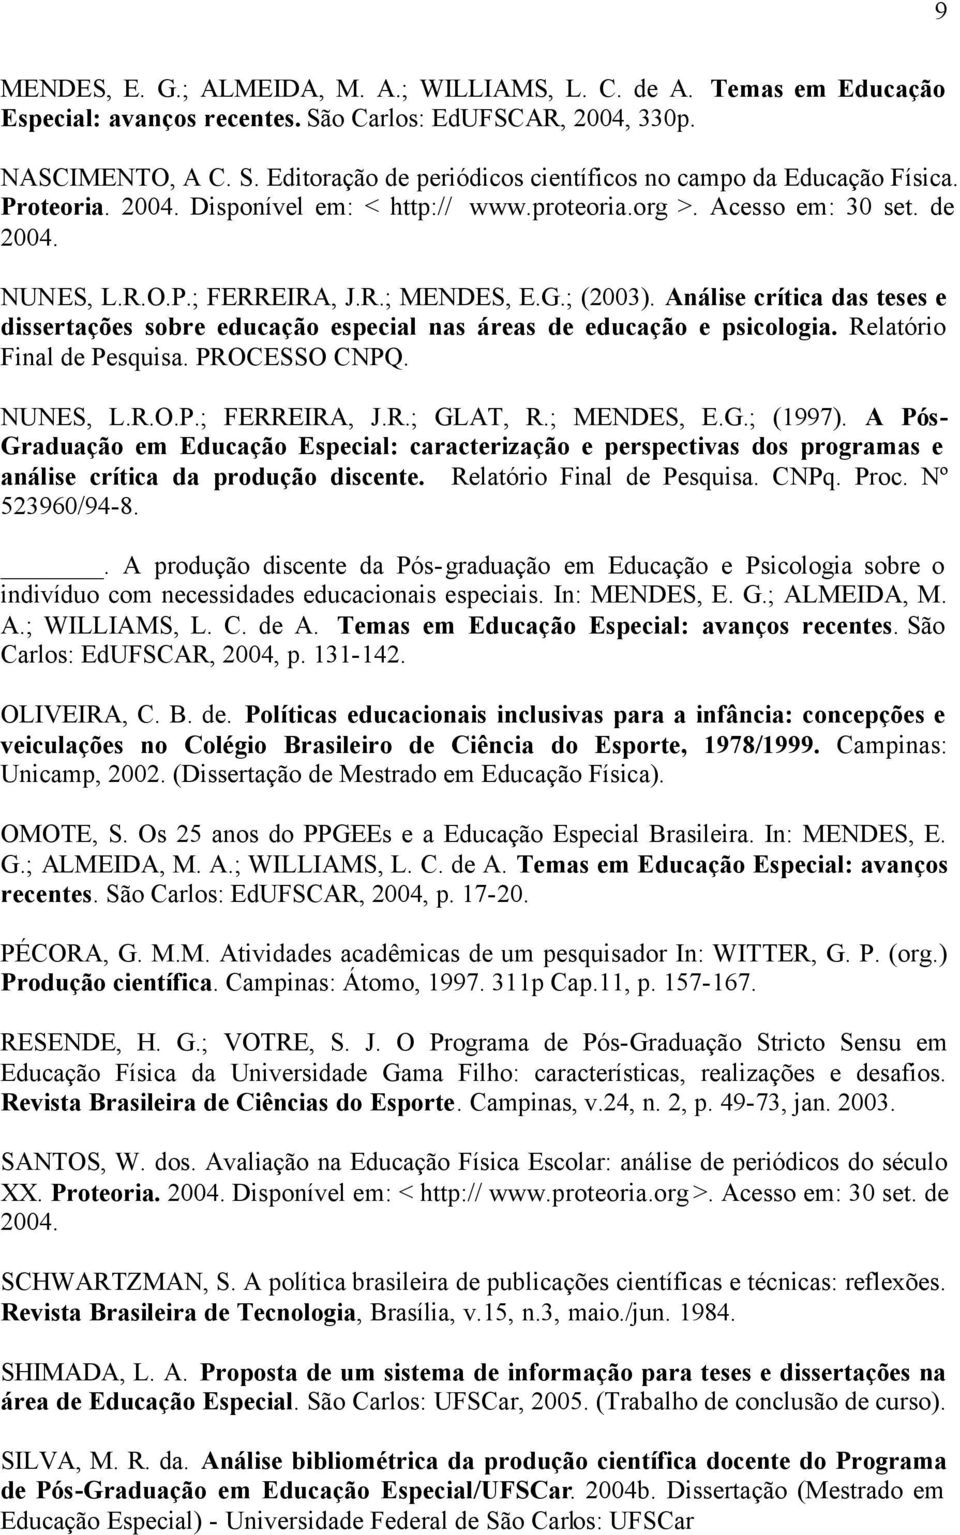 Análise crítica das teses e dissertações sobre educação especial nas áreas de educação e psicologia. Relatório Final de Pesquisa. PROCESSO CNPQ. NUNES, L.R.O.P.; FERREIRA, J.R.; GLAT, R.; MENDES, E.G.; (1997).